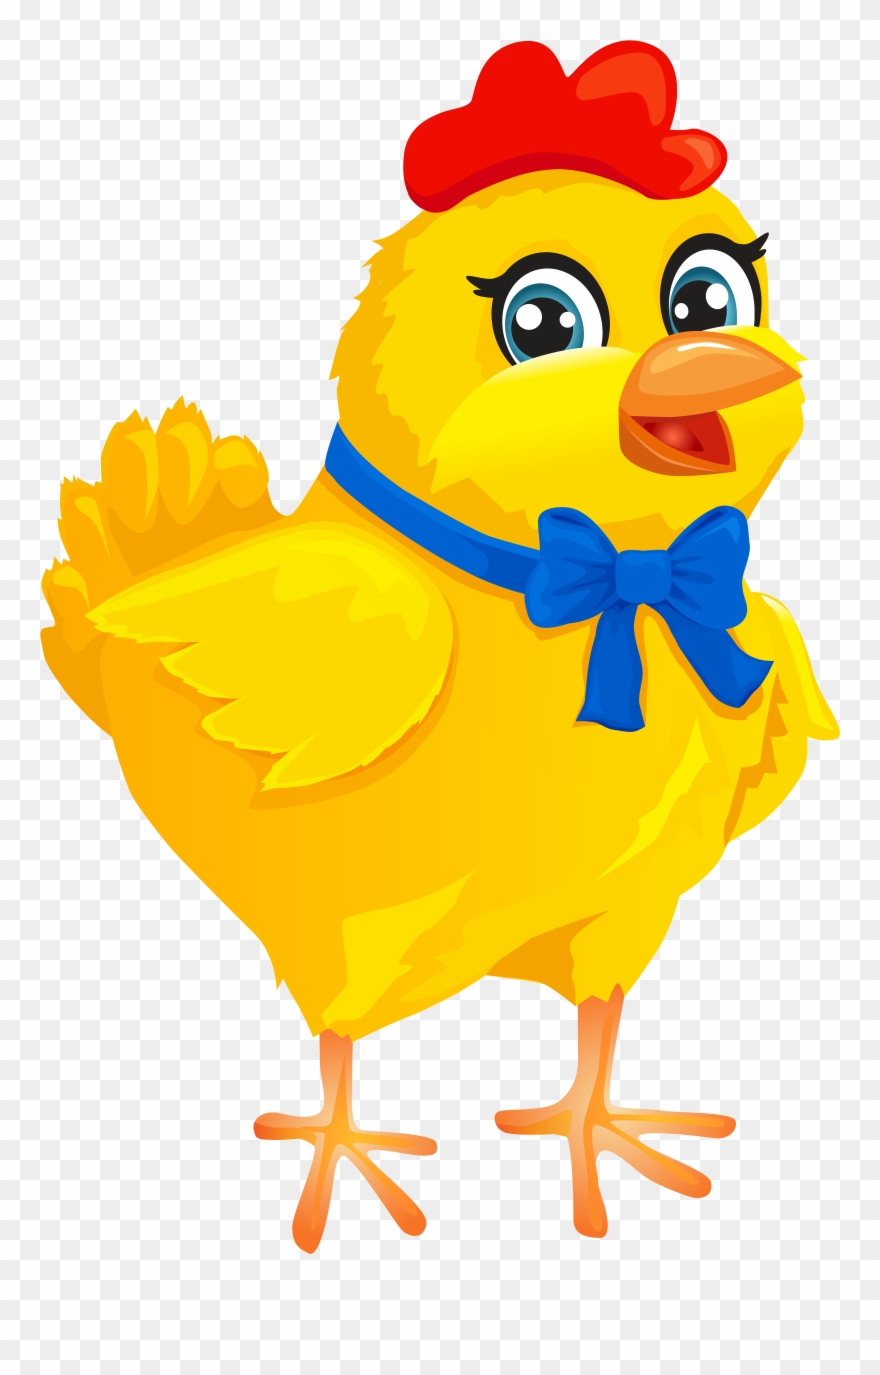 chicken clipart yellow chicken